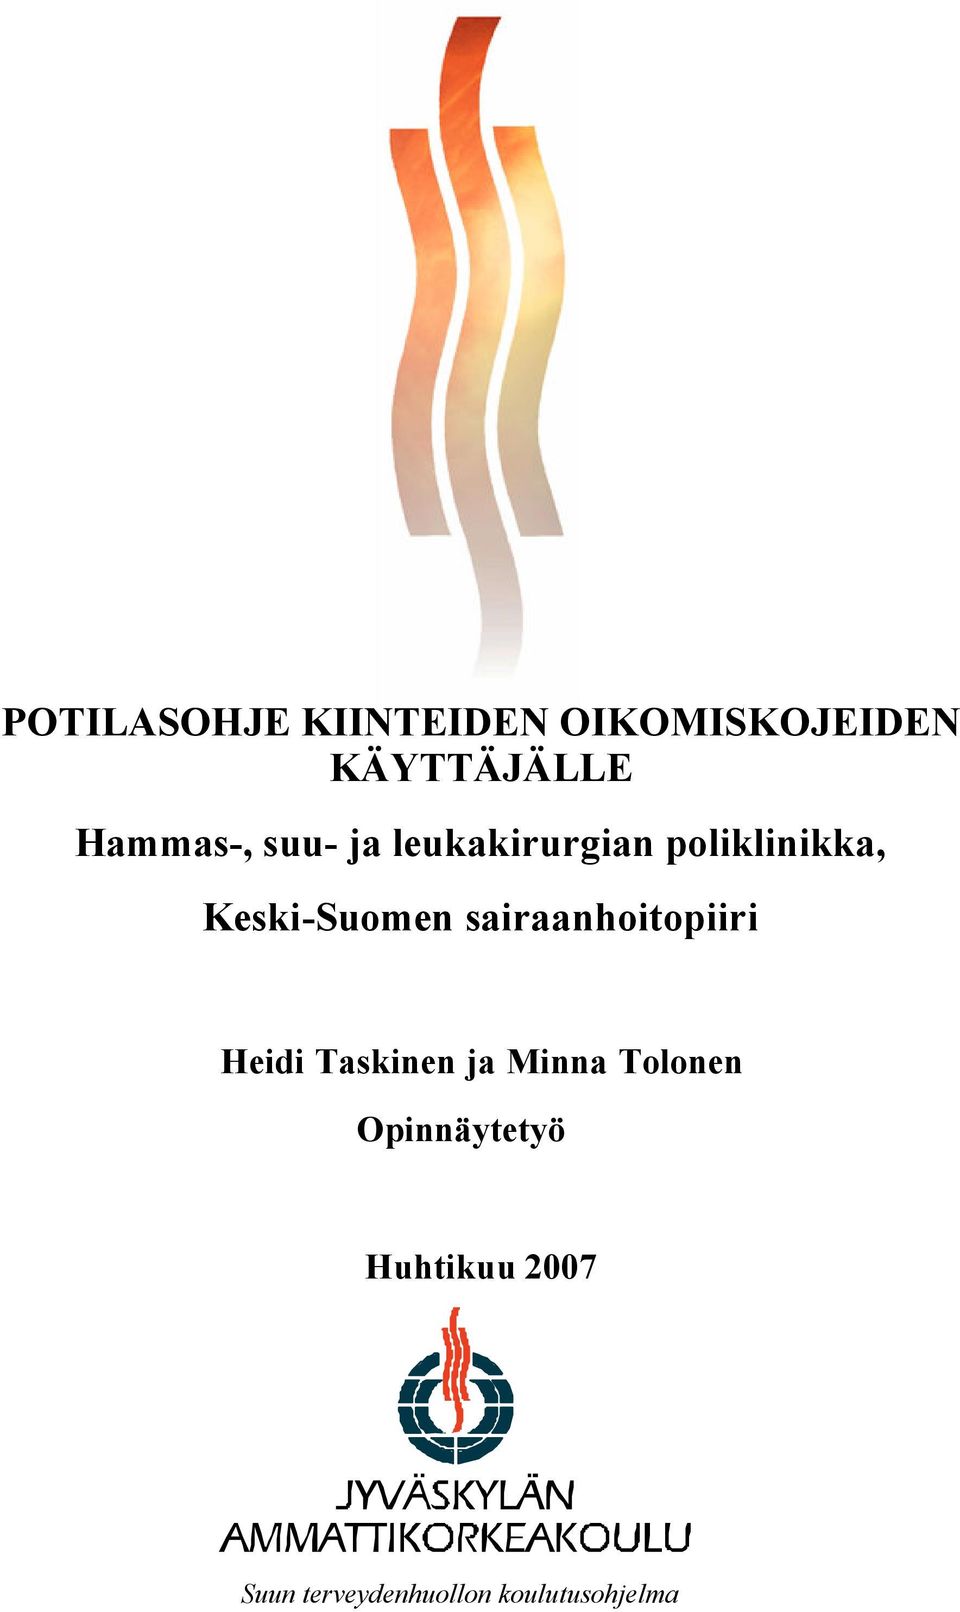 Keski-Suomen sairaanhoitopiiri Heidi Taskinen ja Minna